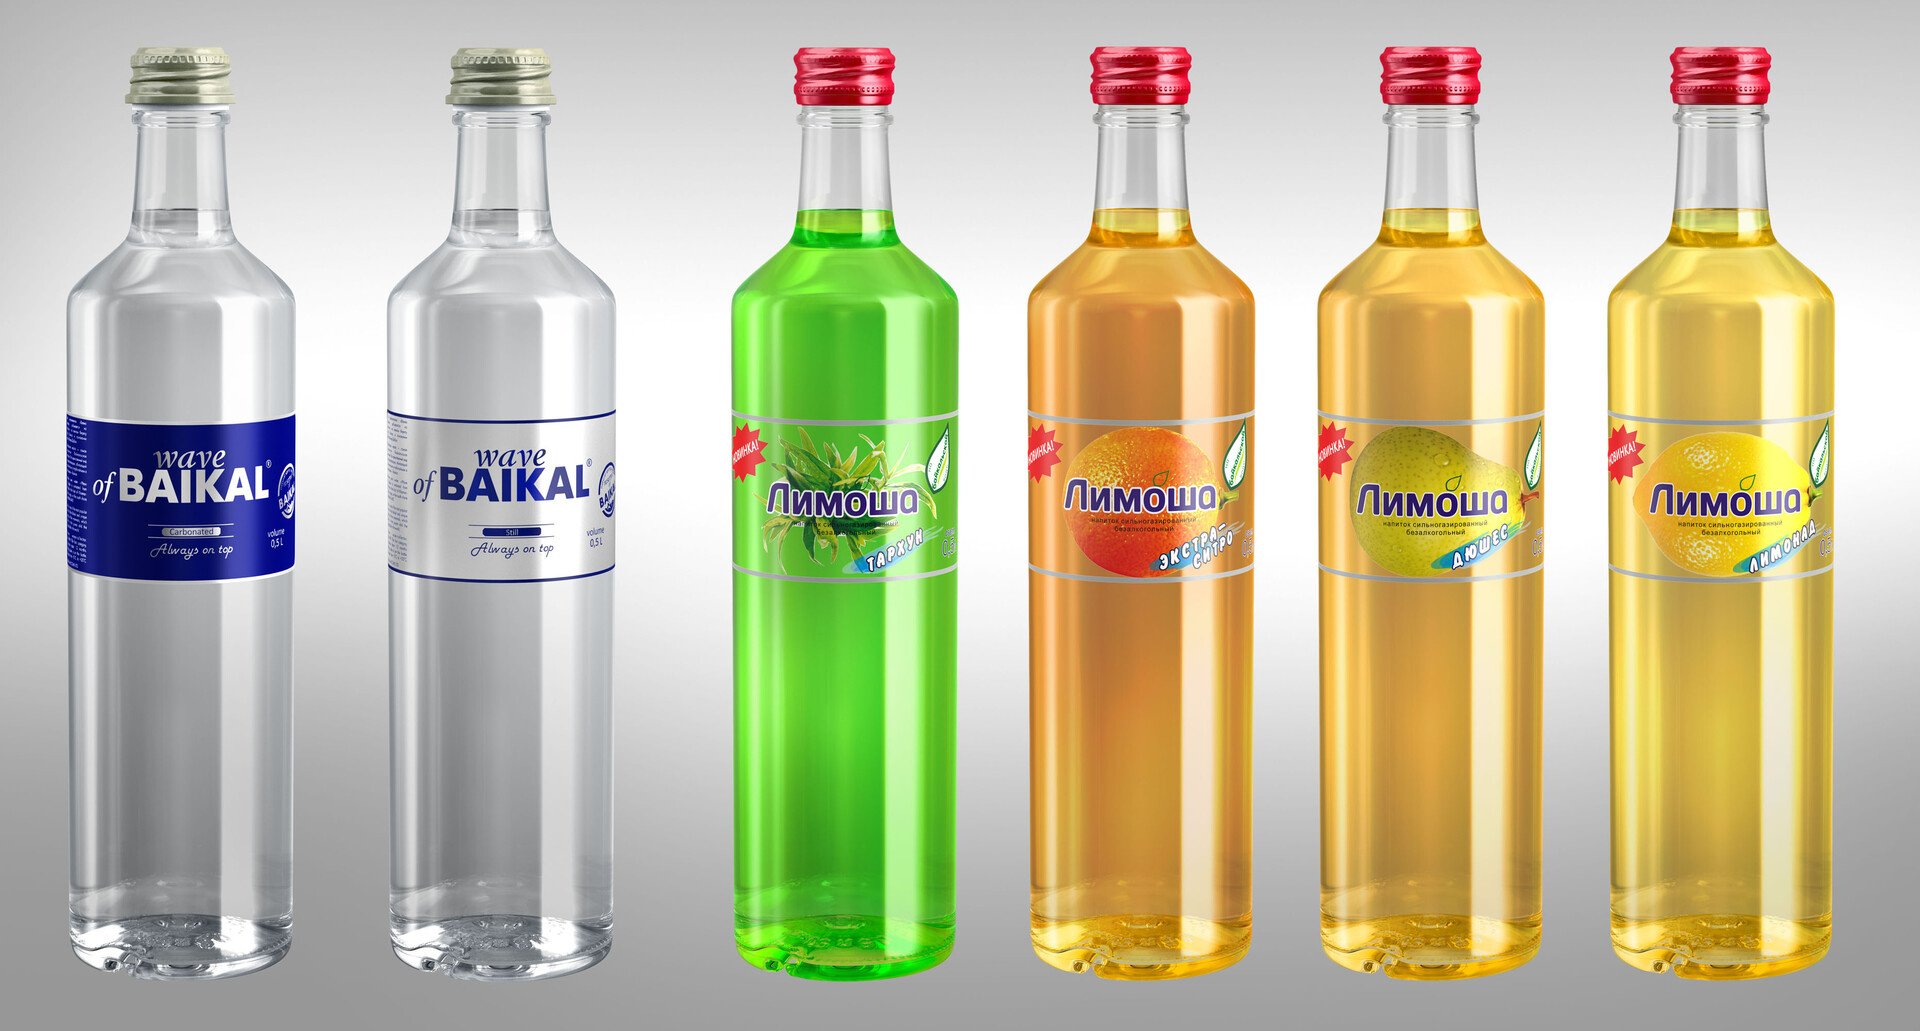 Nikita GR - Glass bottles